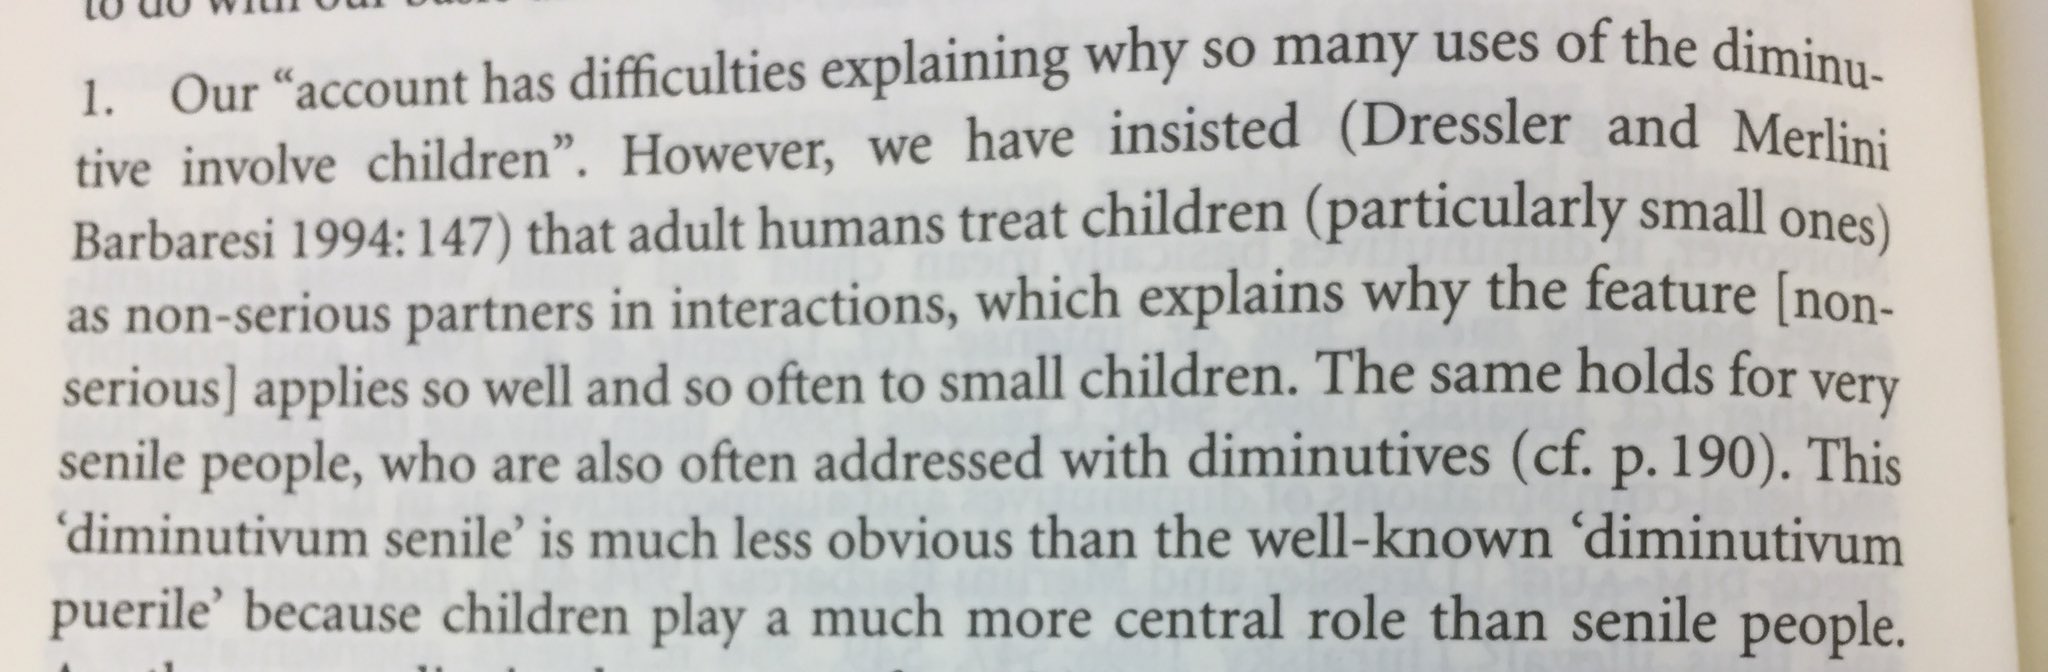 Extracto dun libro onde argumenta que os diminutivos úsanse cos cativos porque non os tomamos a serio.